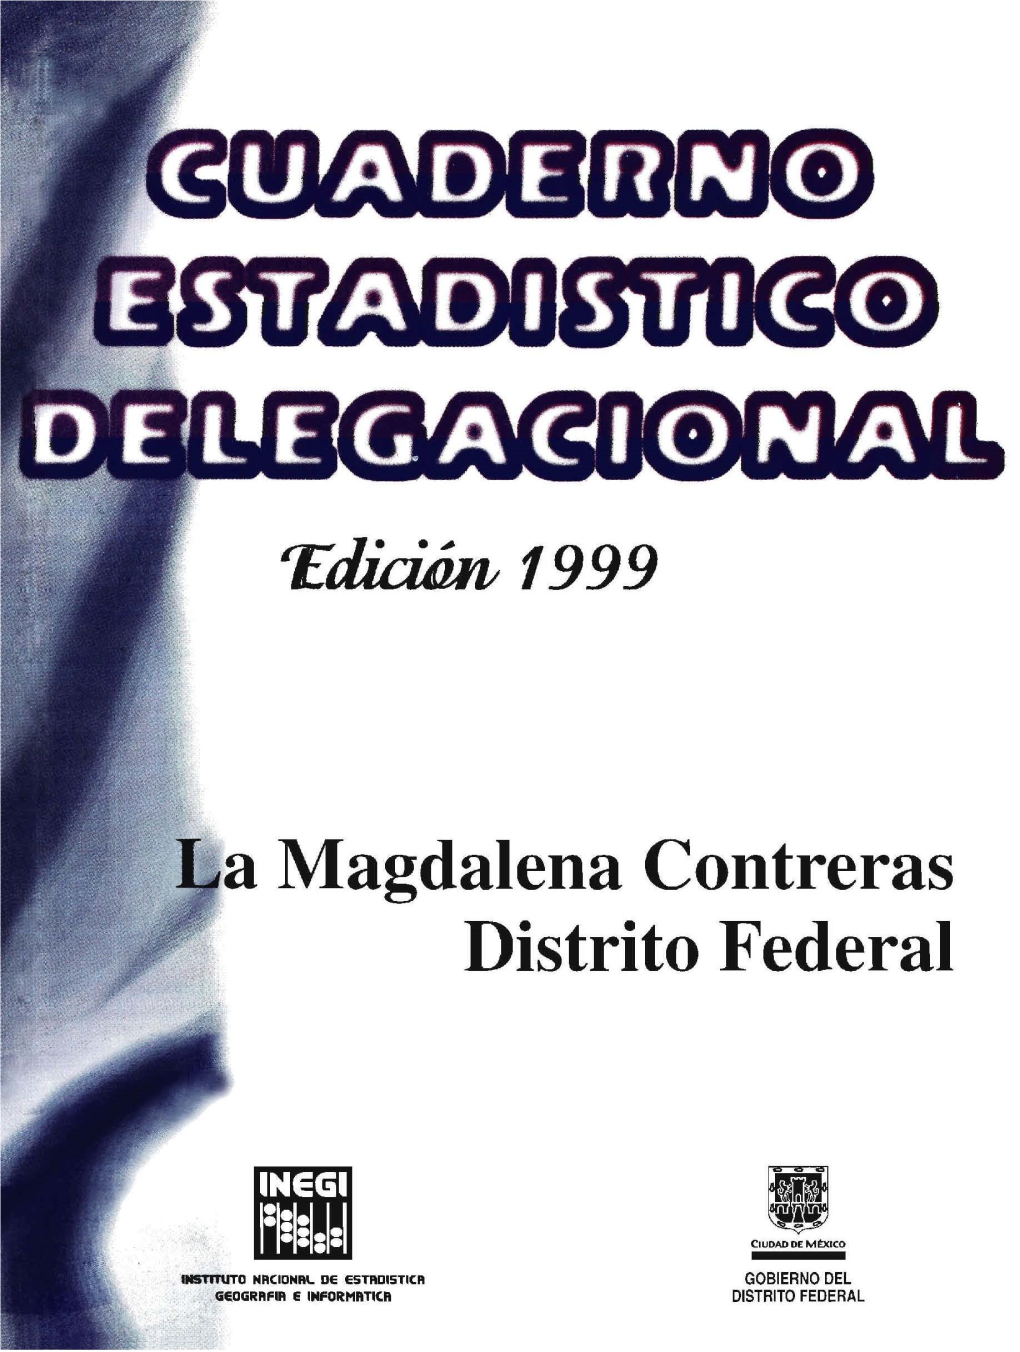 La Magdalena Contreras Distrito Federal Cuaderno Estadístico Delegacional Edición 1999